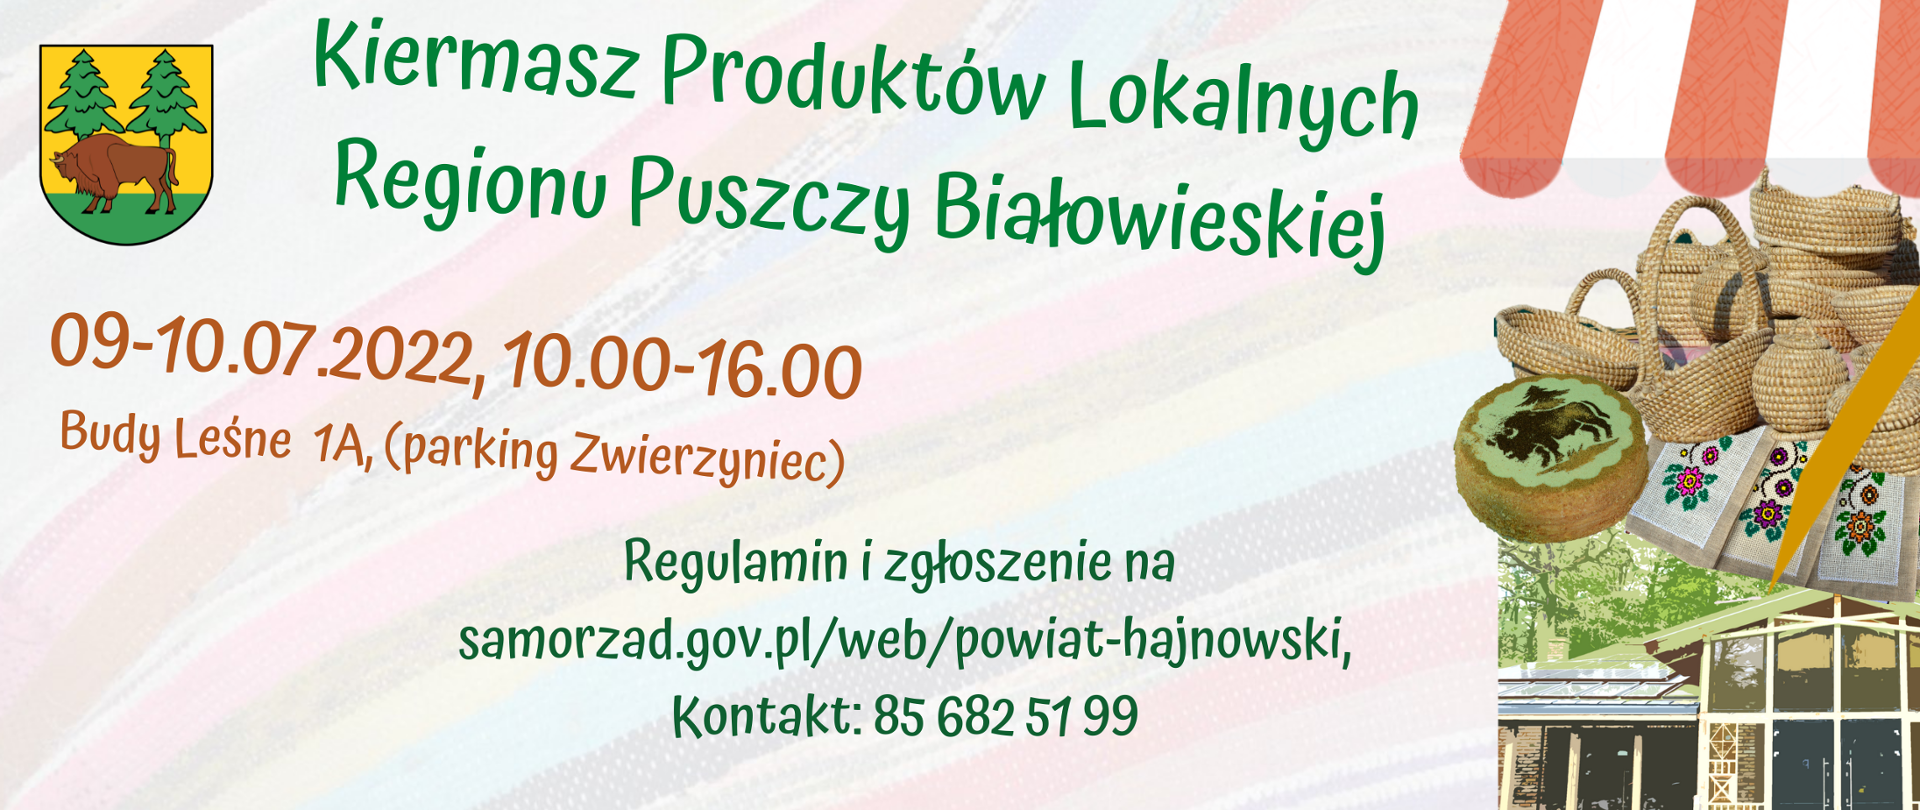 Kiermasz Produktów Lokalnych Regionu Puszczy Białowieskiej, 09-10.07.2022 Budy Leśne 1A 